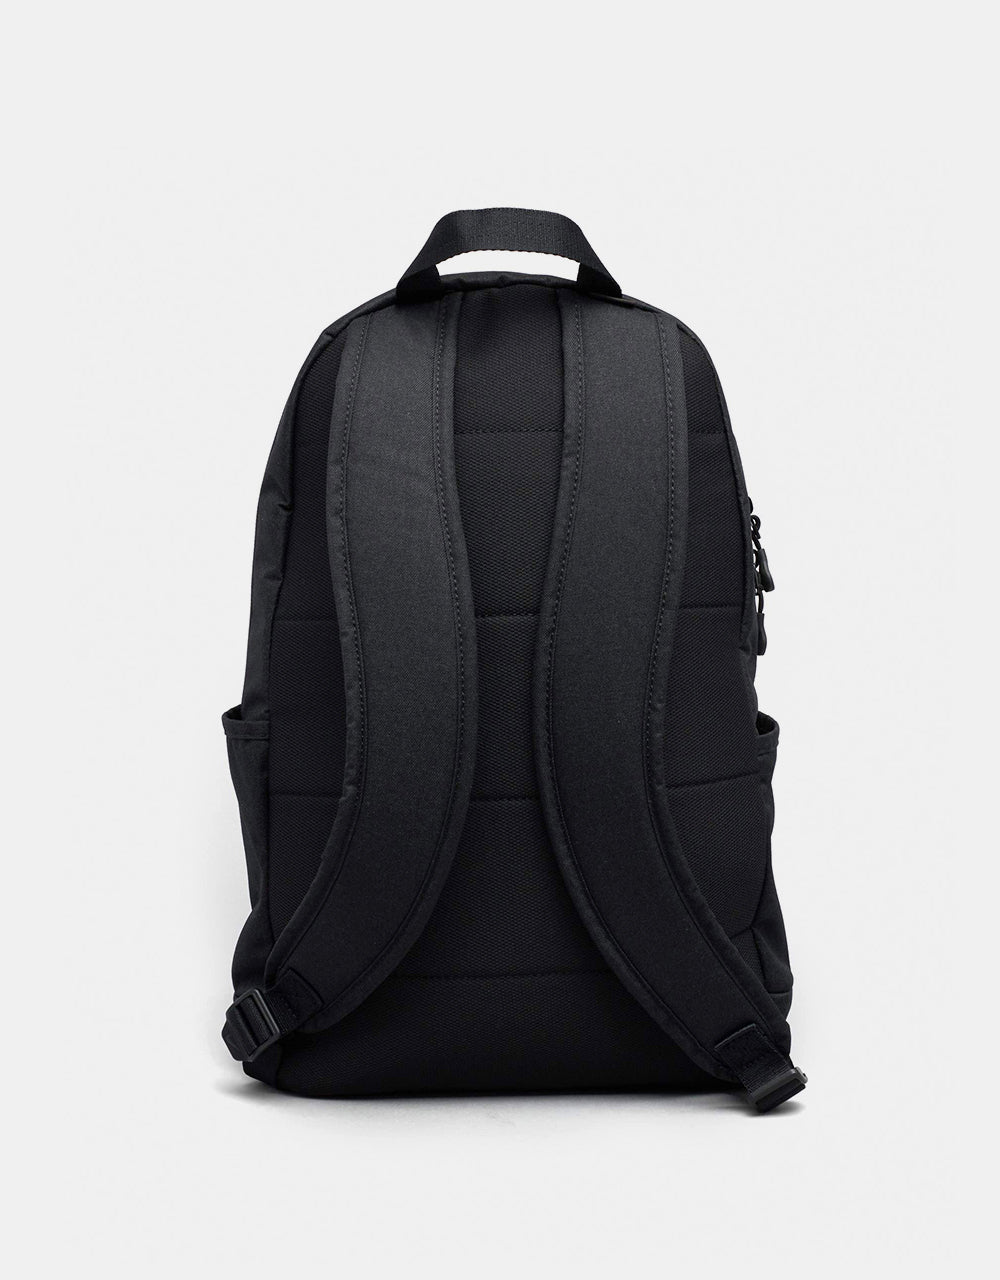 Nike SB Elemental Backpack - Black/Black/Anthracite